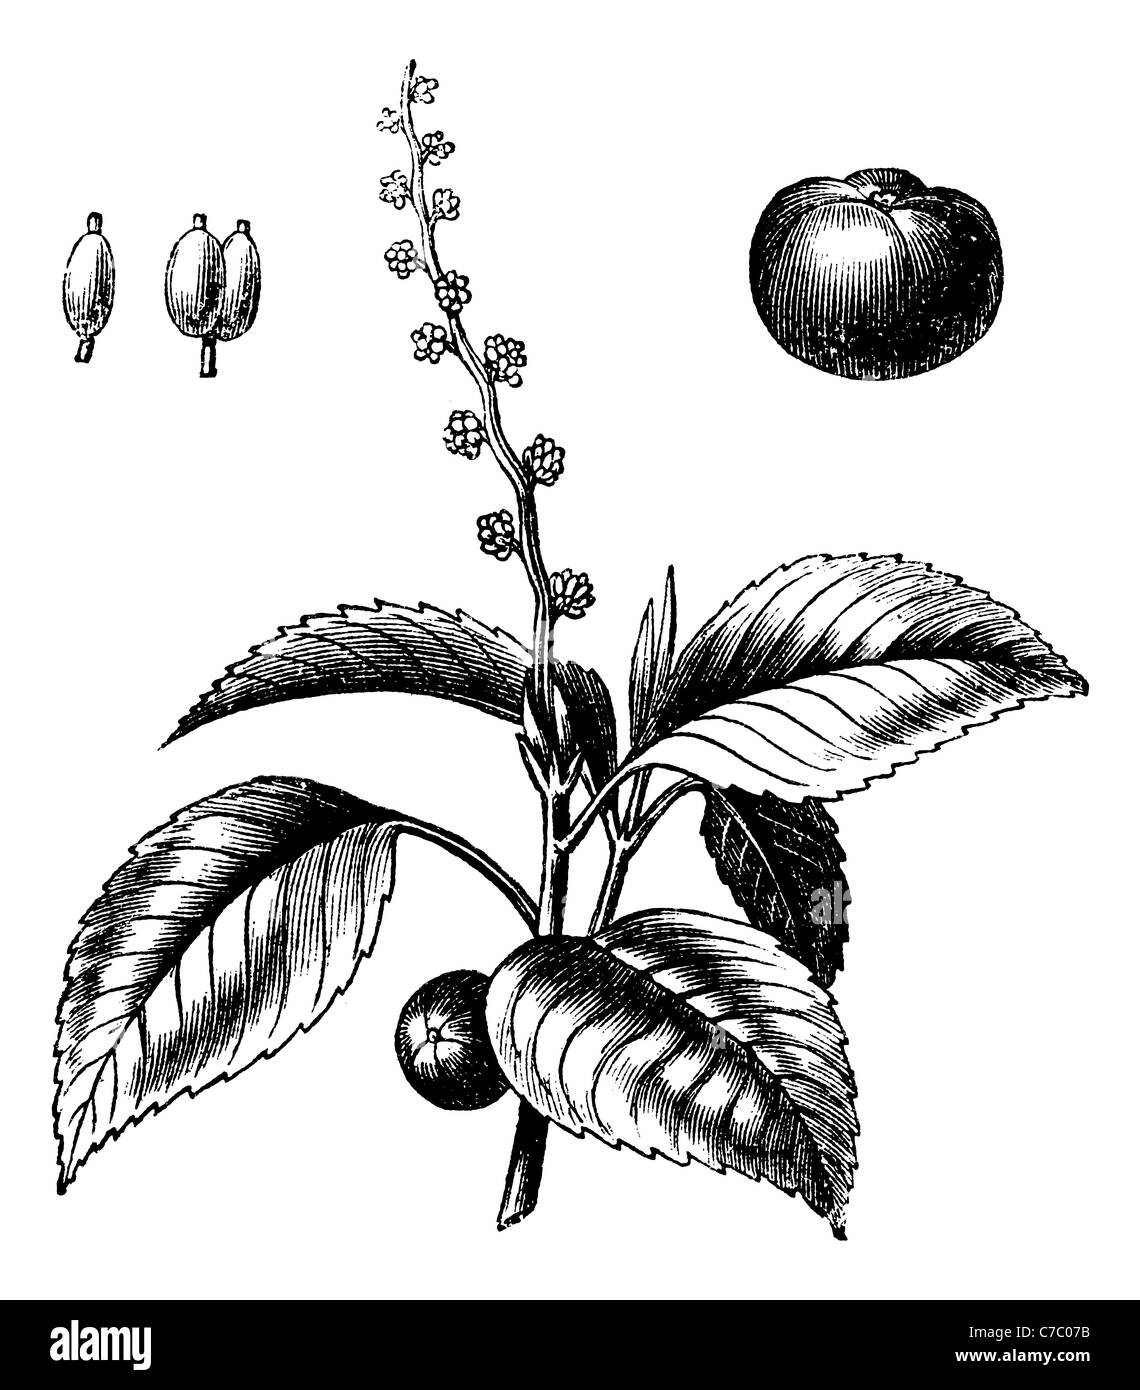 Manchineel albero o Mancinella, vintage incisione. Vecchie illustrazioni incise della struttura Manchineel isolato su uno sfondo bianco. Foto Stock